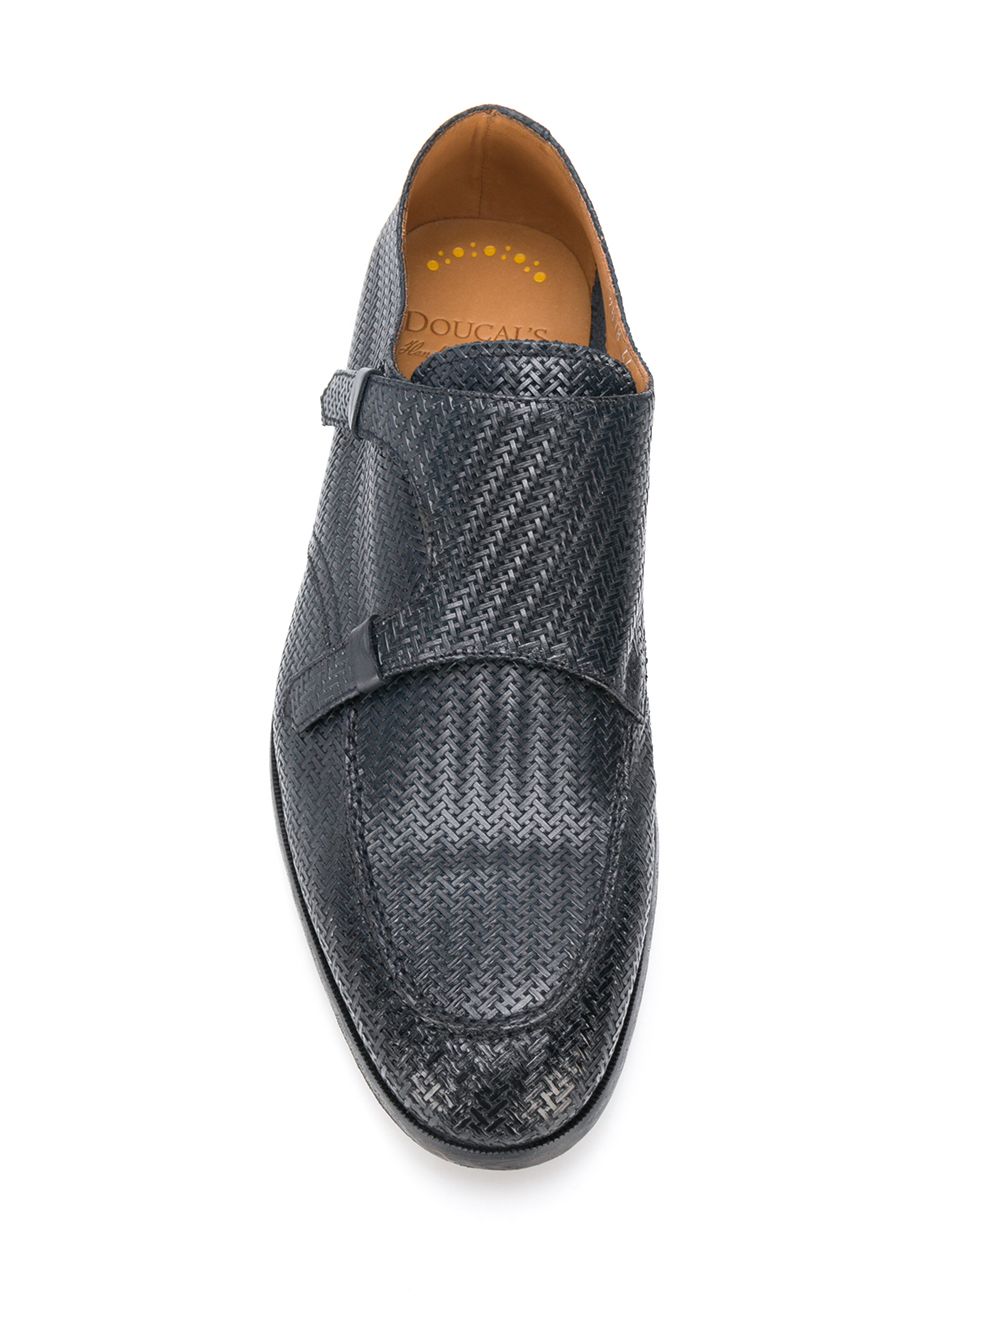 плетеные туфли монки DOUCAL'S 149212585252